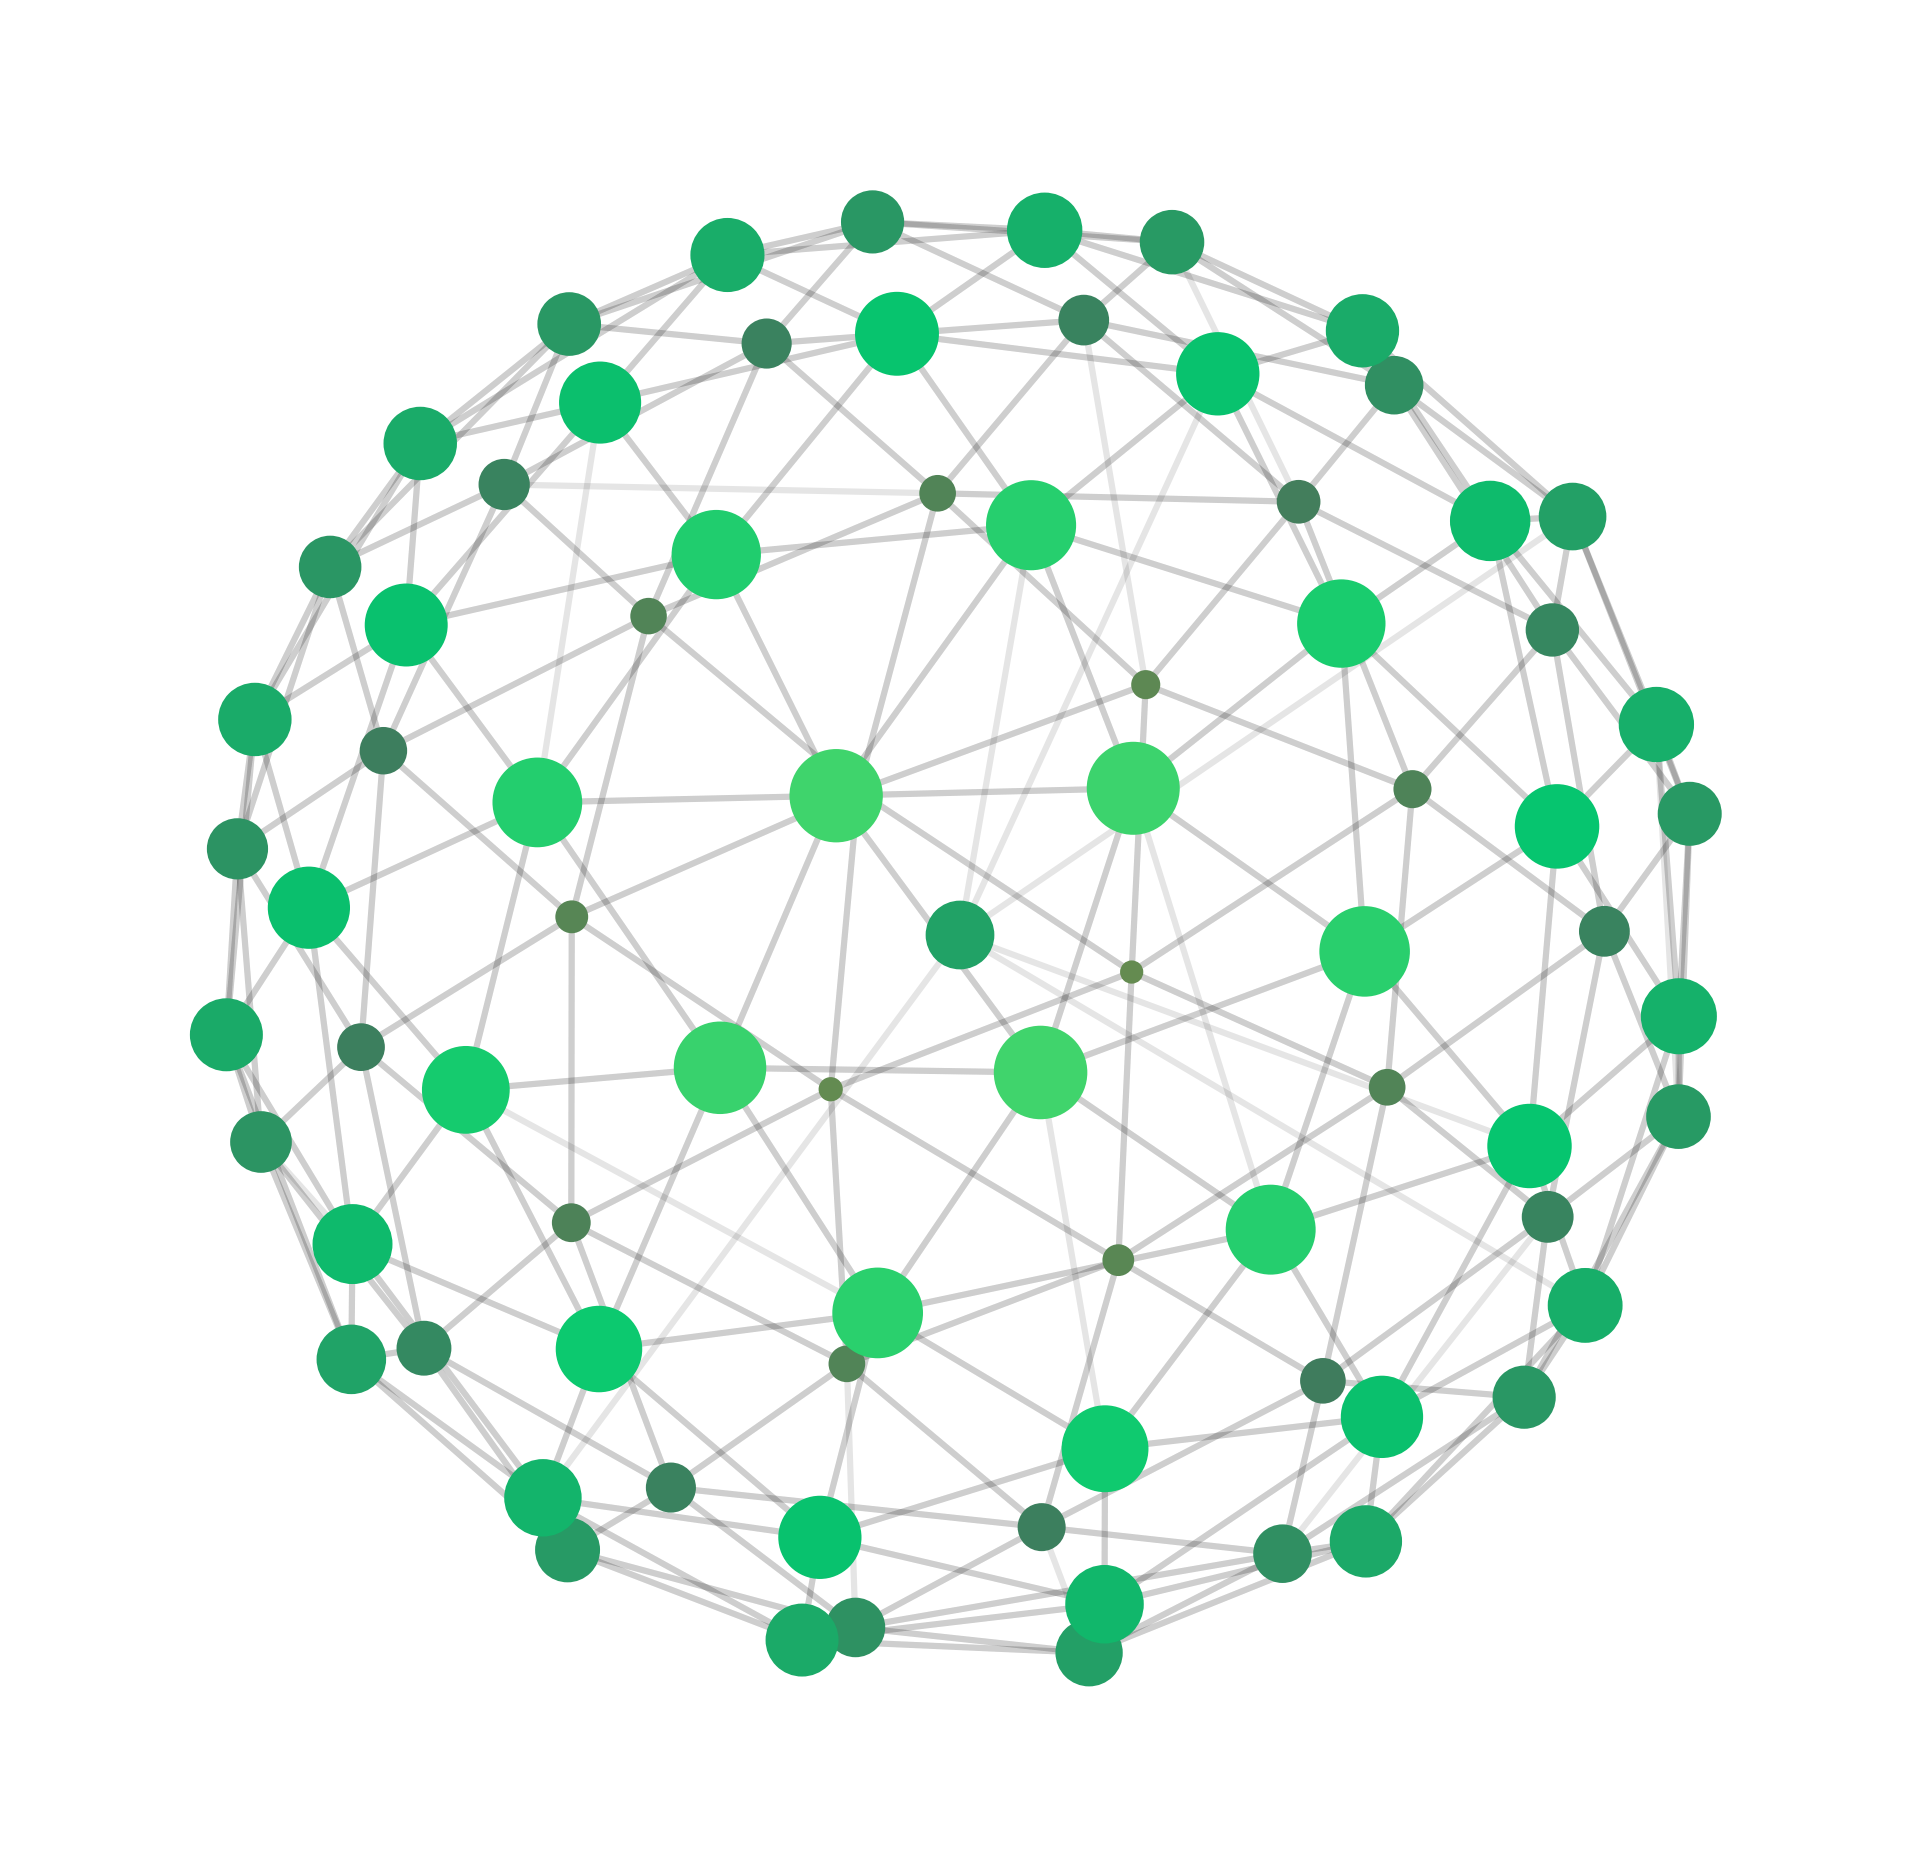 Bildet viser n punkter fordelt med lik avstand på et kuleskall